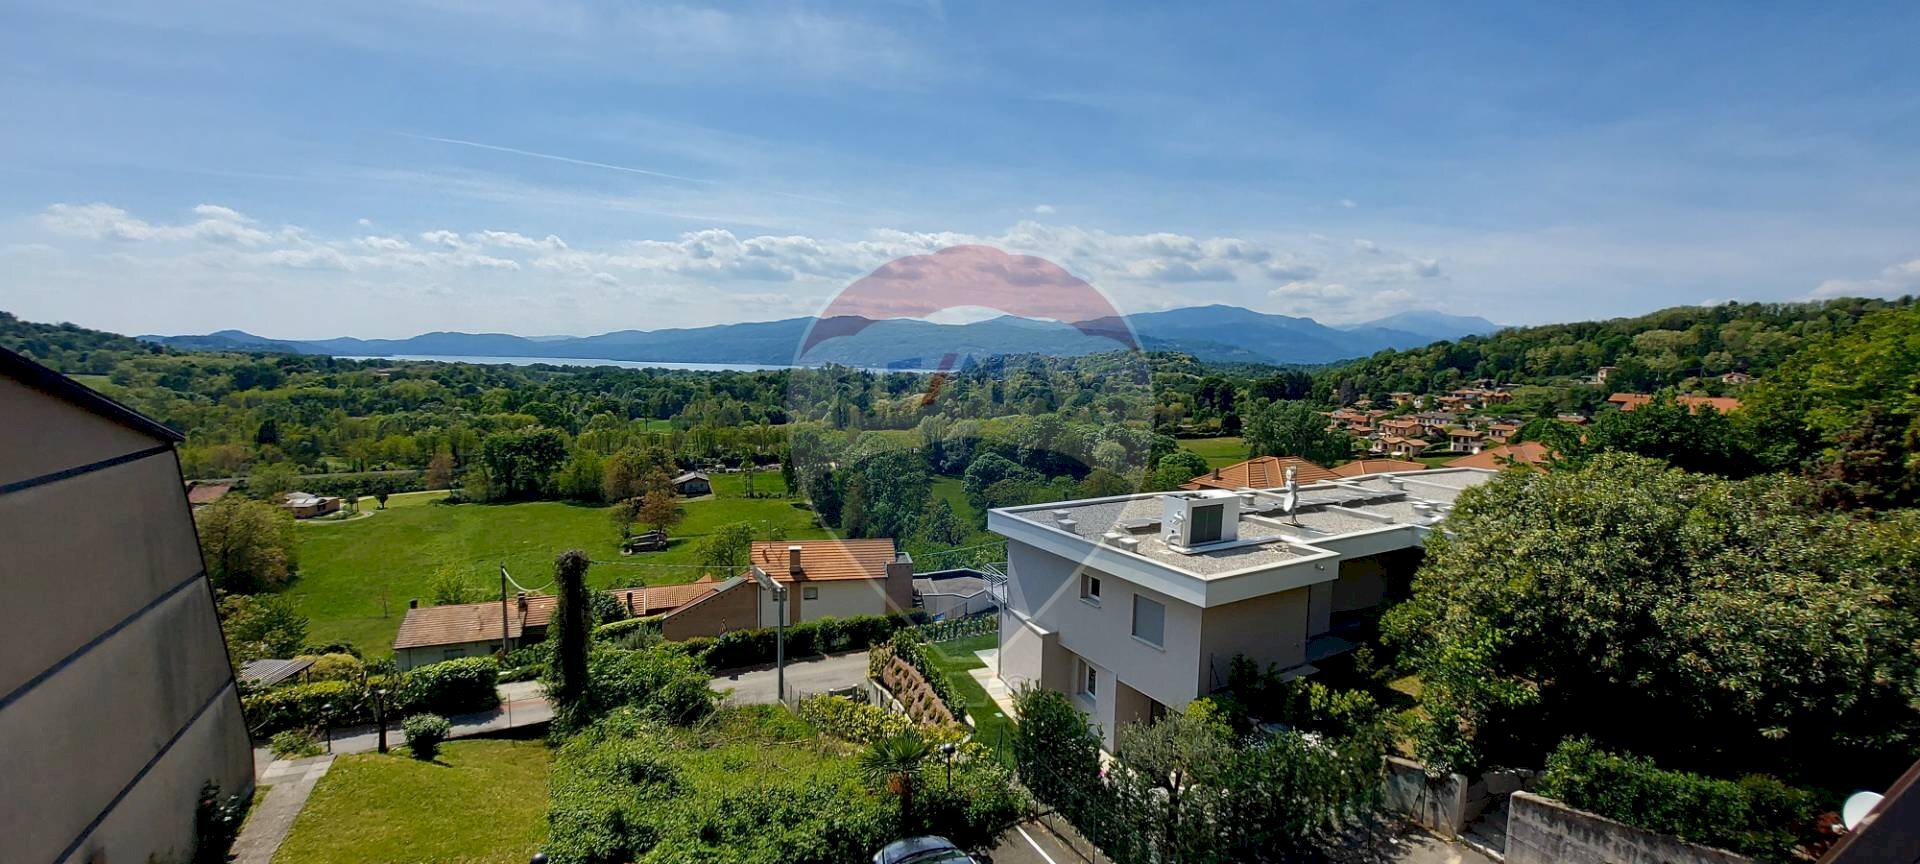 Vendita Villa a Schiera Via Beolchi
Cardana, Besozzo, Besozzo